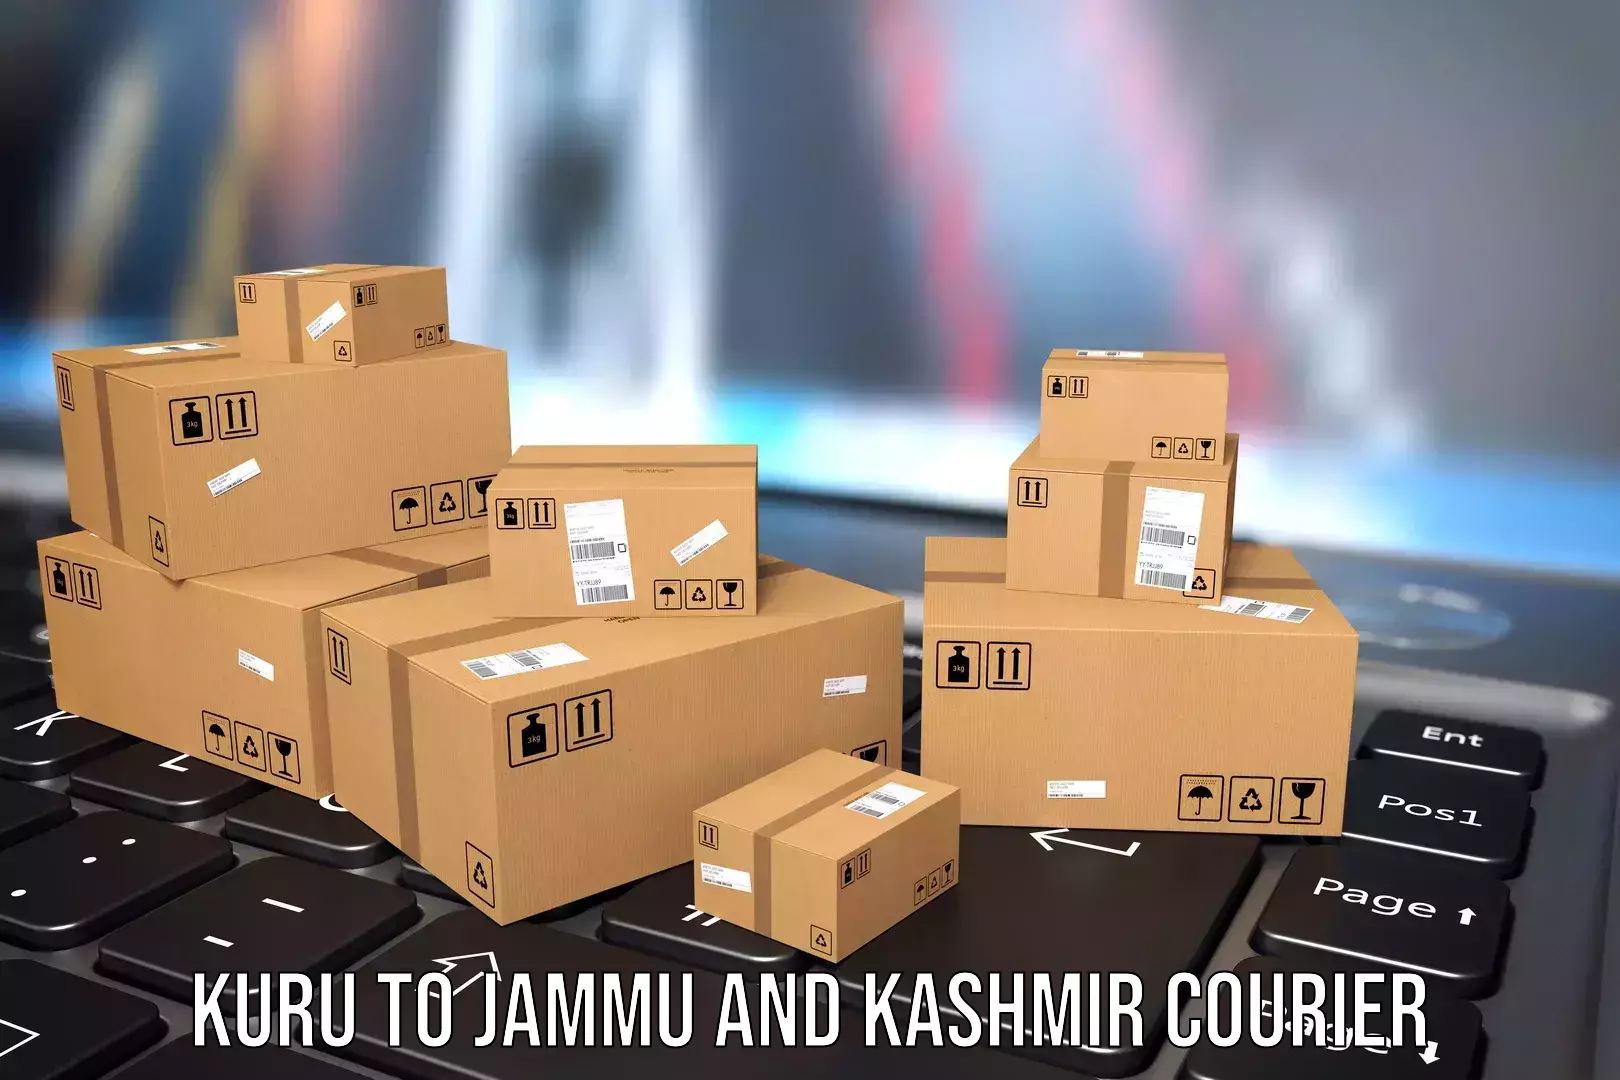 Baggage transport scheduler Kuru to Jammu and Kashmir